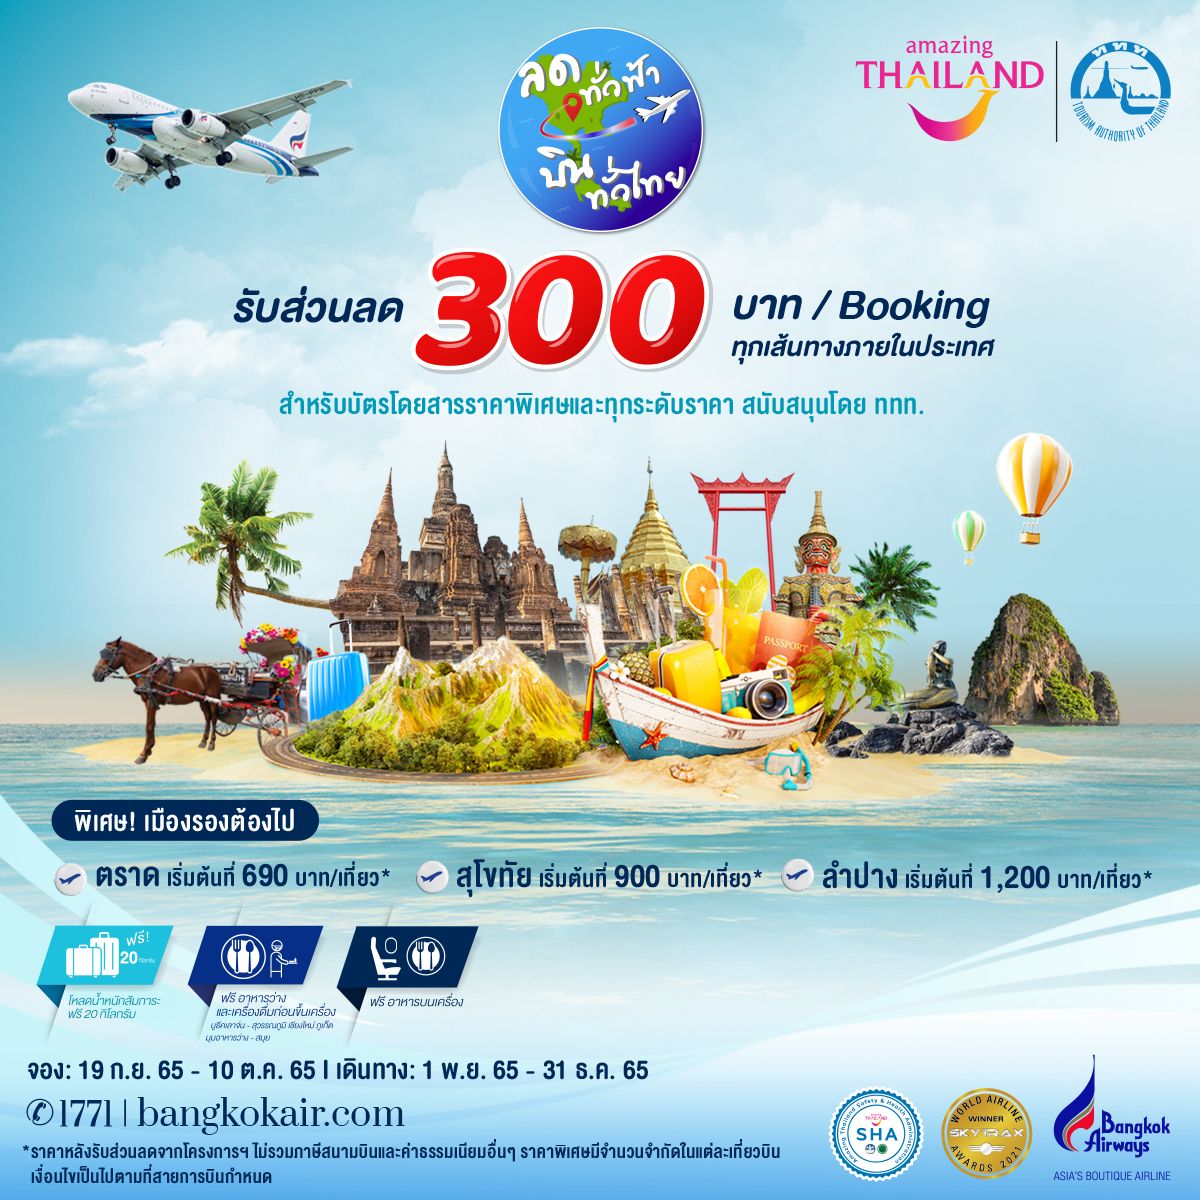 โปรตั๋วเครื่องบิน Bangkok Airways ลดทุกเส้นทางในประเทศ 300.- กันยายน 2022 -  Sale Here